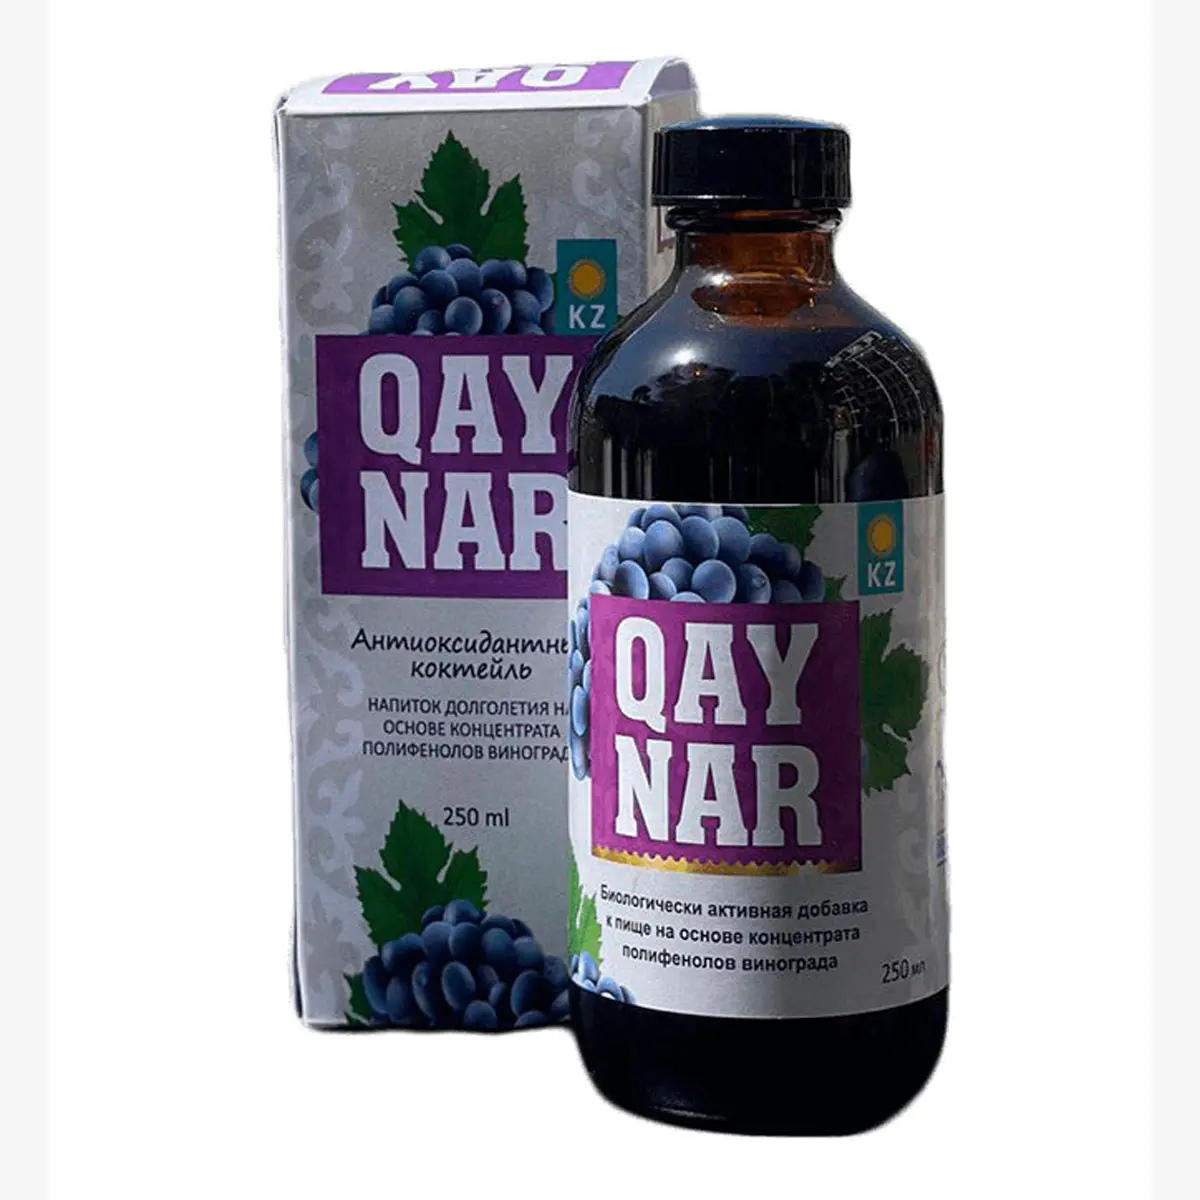 ブドウ種子抽出物ポリフェノール「QAYNAR」バイオ活性食品サプリメントは老化の影響を軽減し、ブドウ種子ポリフェノール